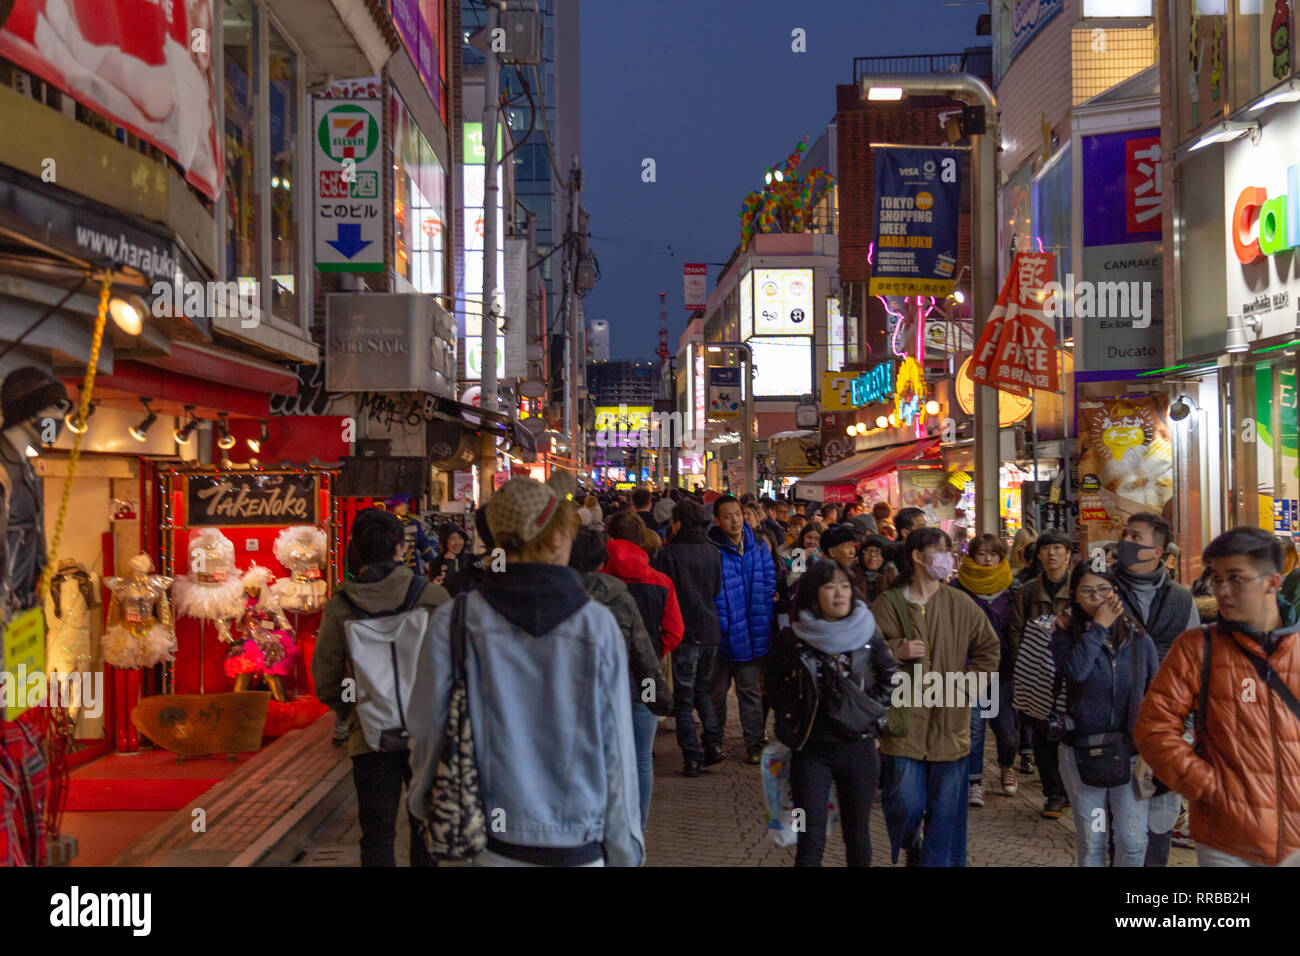 TOKYO, JAPON - 1 février 2019 : des personnes non identifiées, marcher le long de la rue Takeshita à Harajuku, une célèbre rue de la mode cosplay japonais Banque D'Images